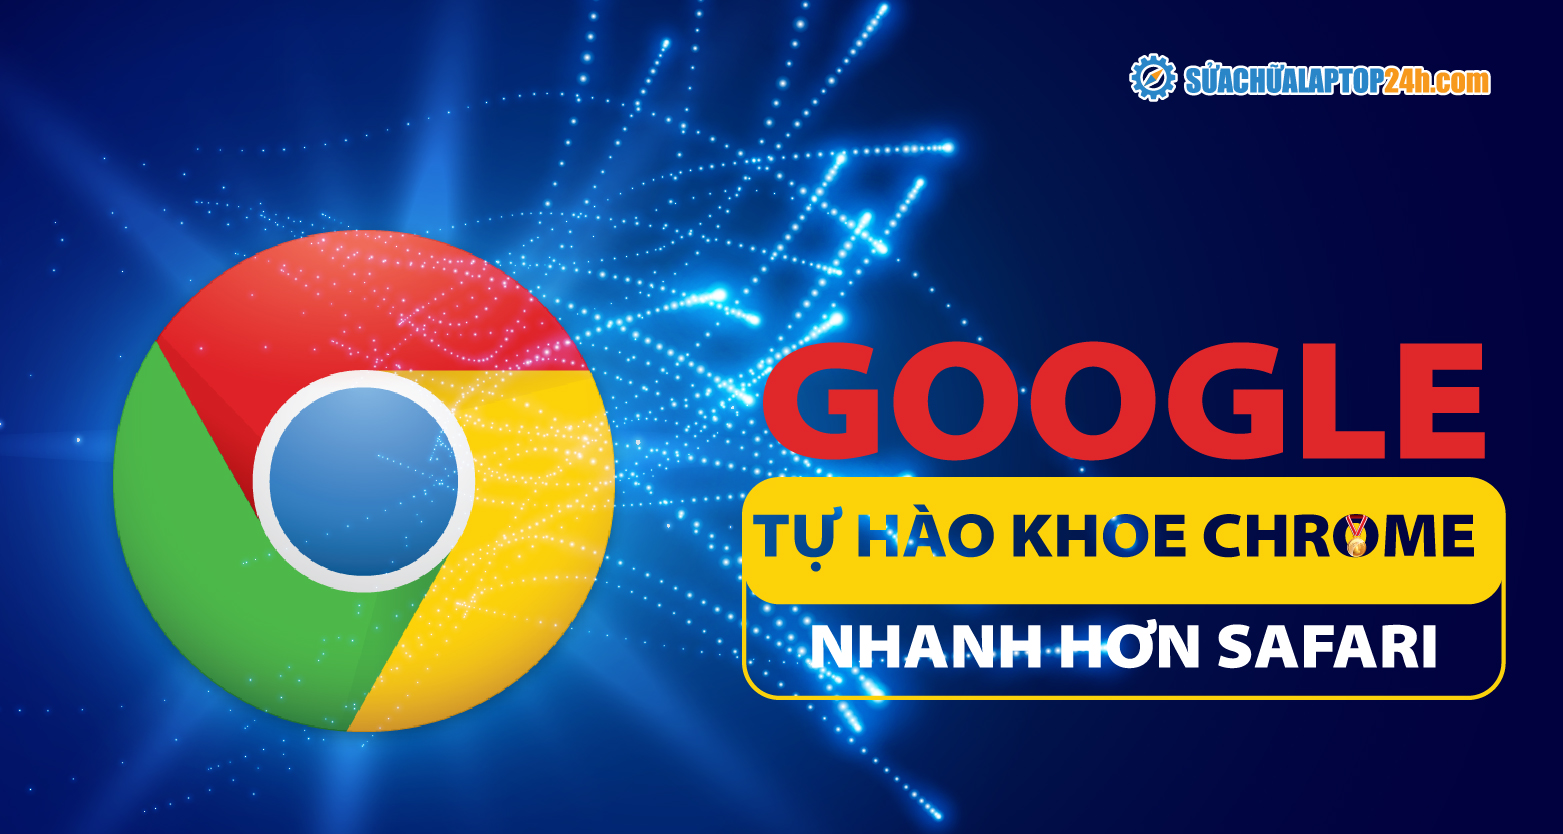 Google tự hào khoe Chrome nhanh hơn Safari